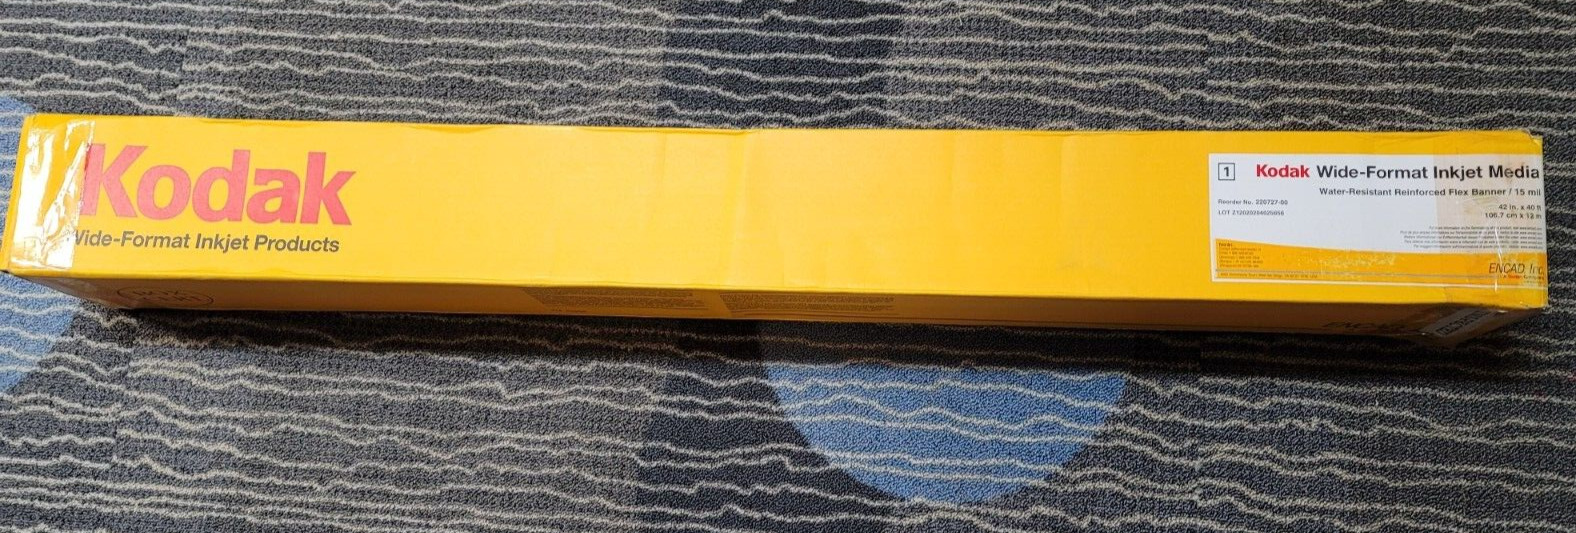 Kodak Water-Resistant Reinforced Flex Banner Roll (42\